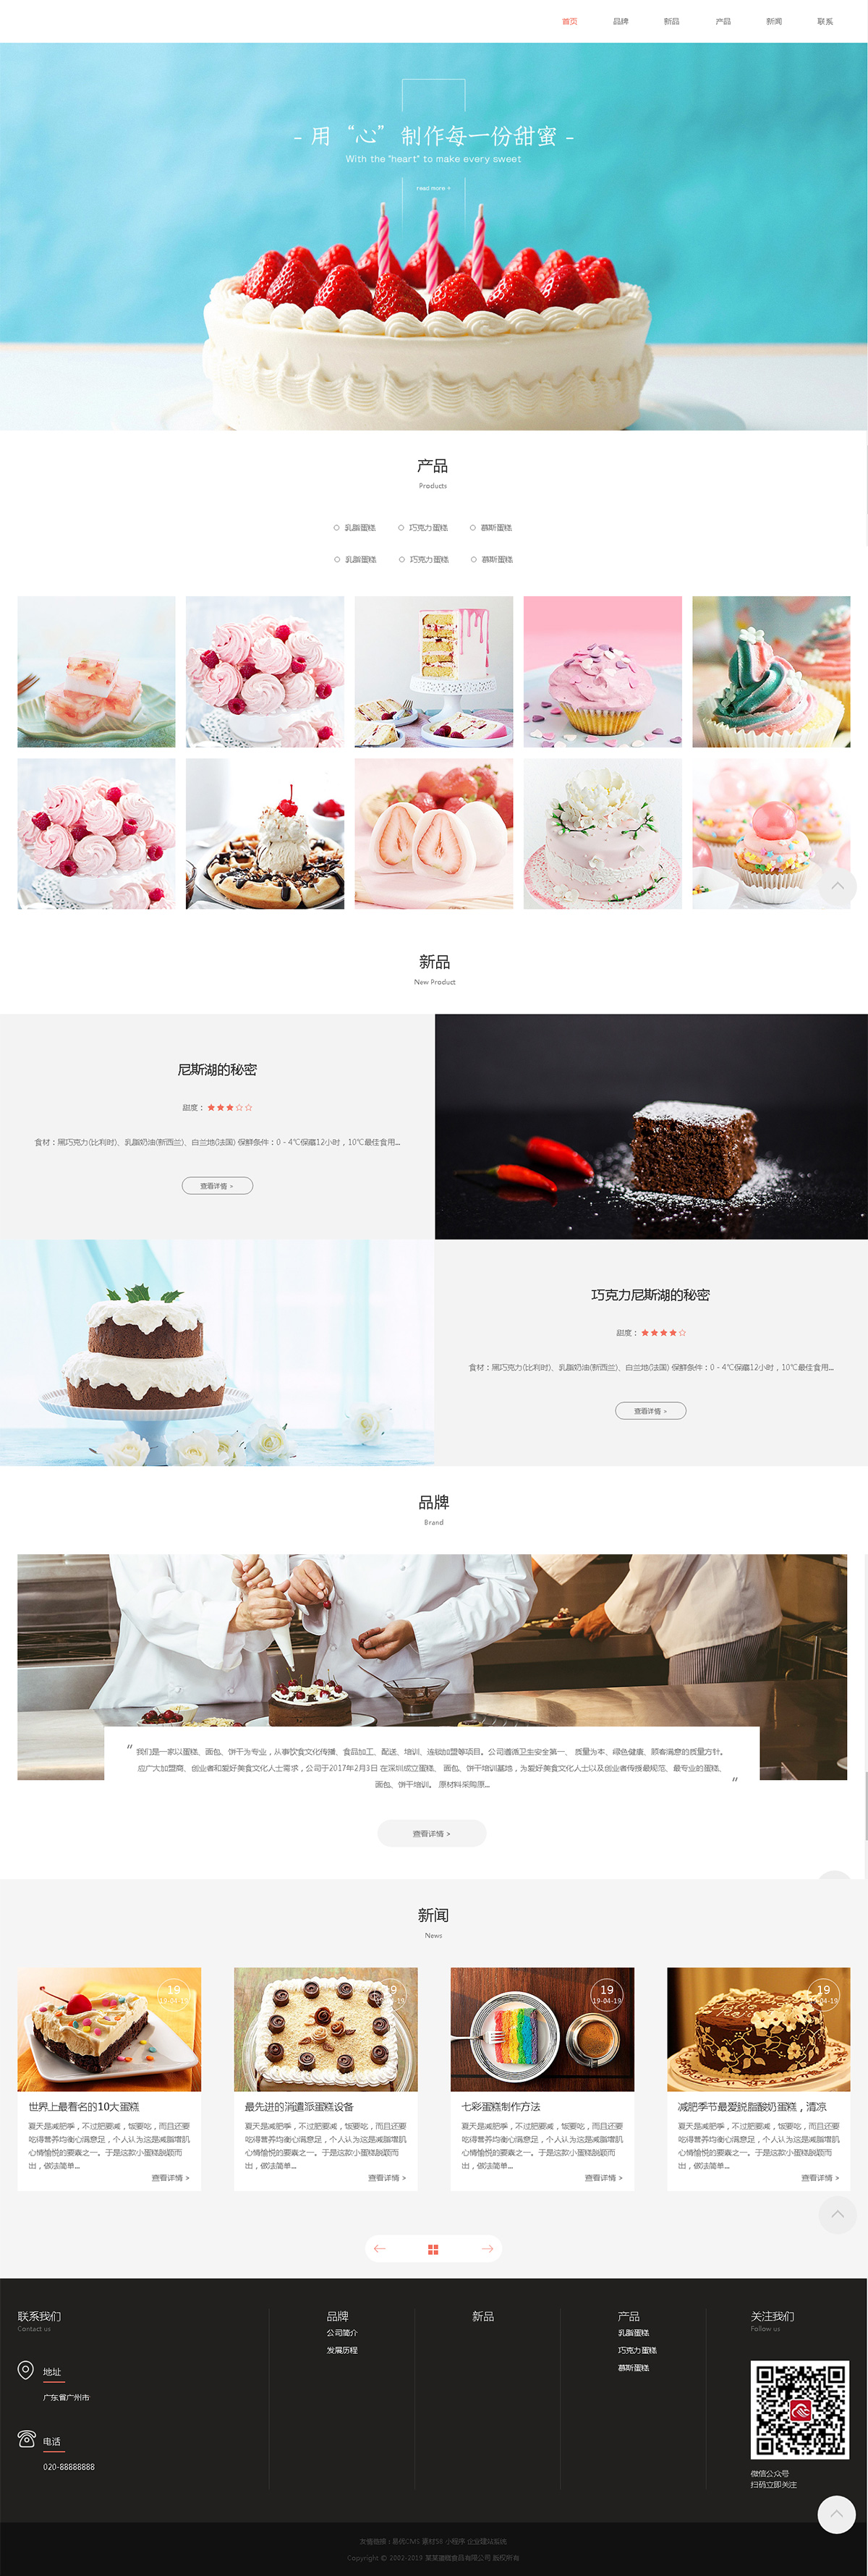 蛋糕网站建设案例